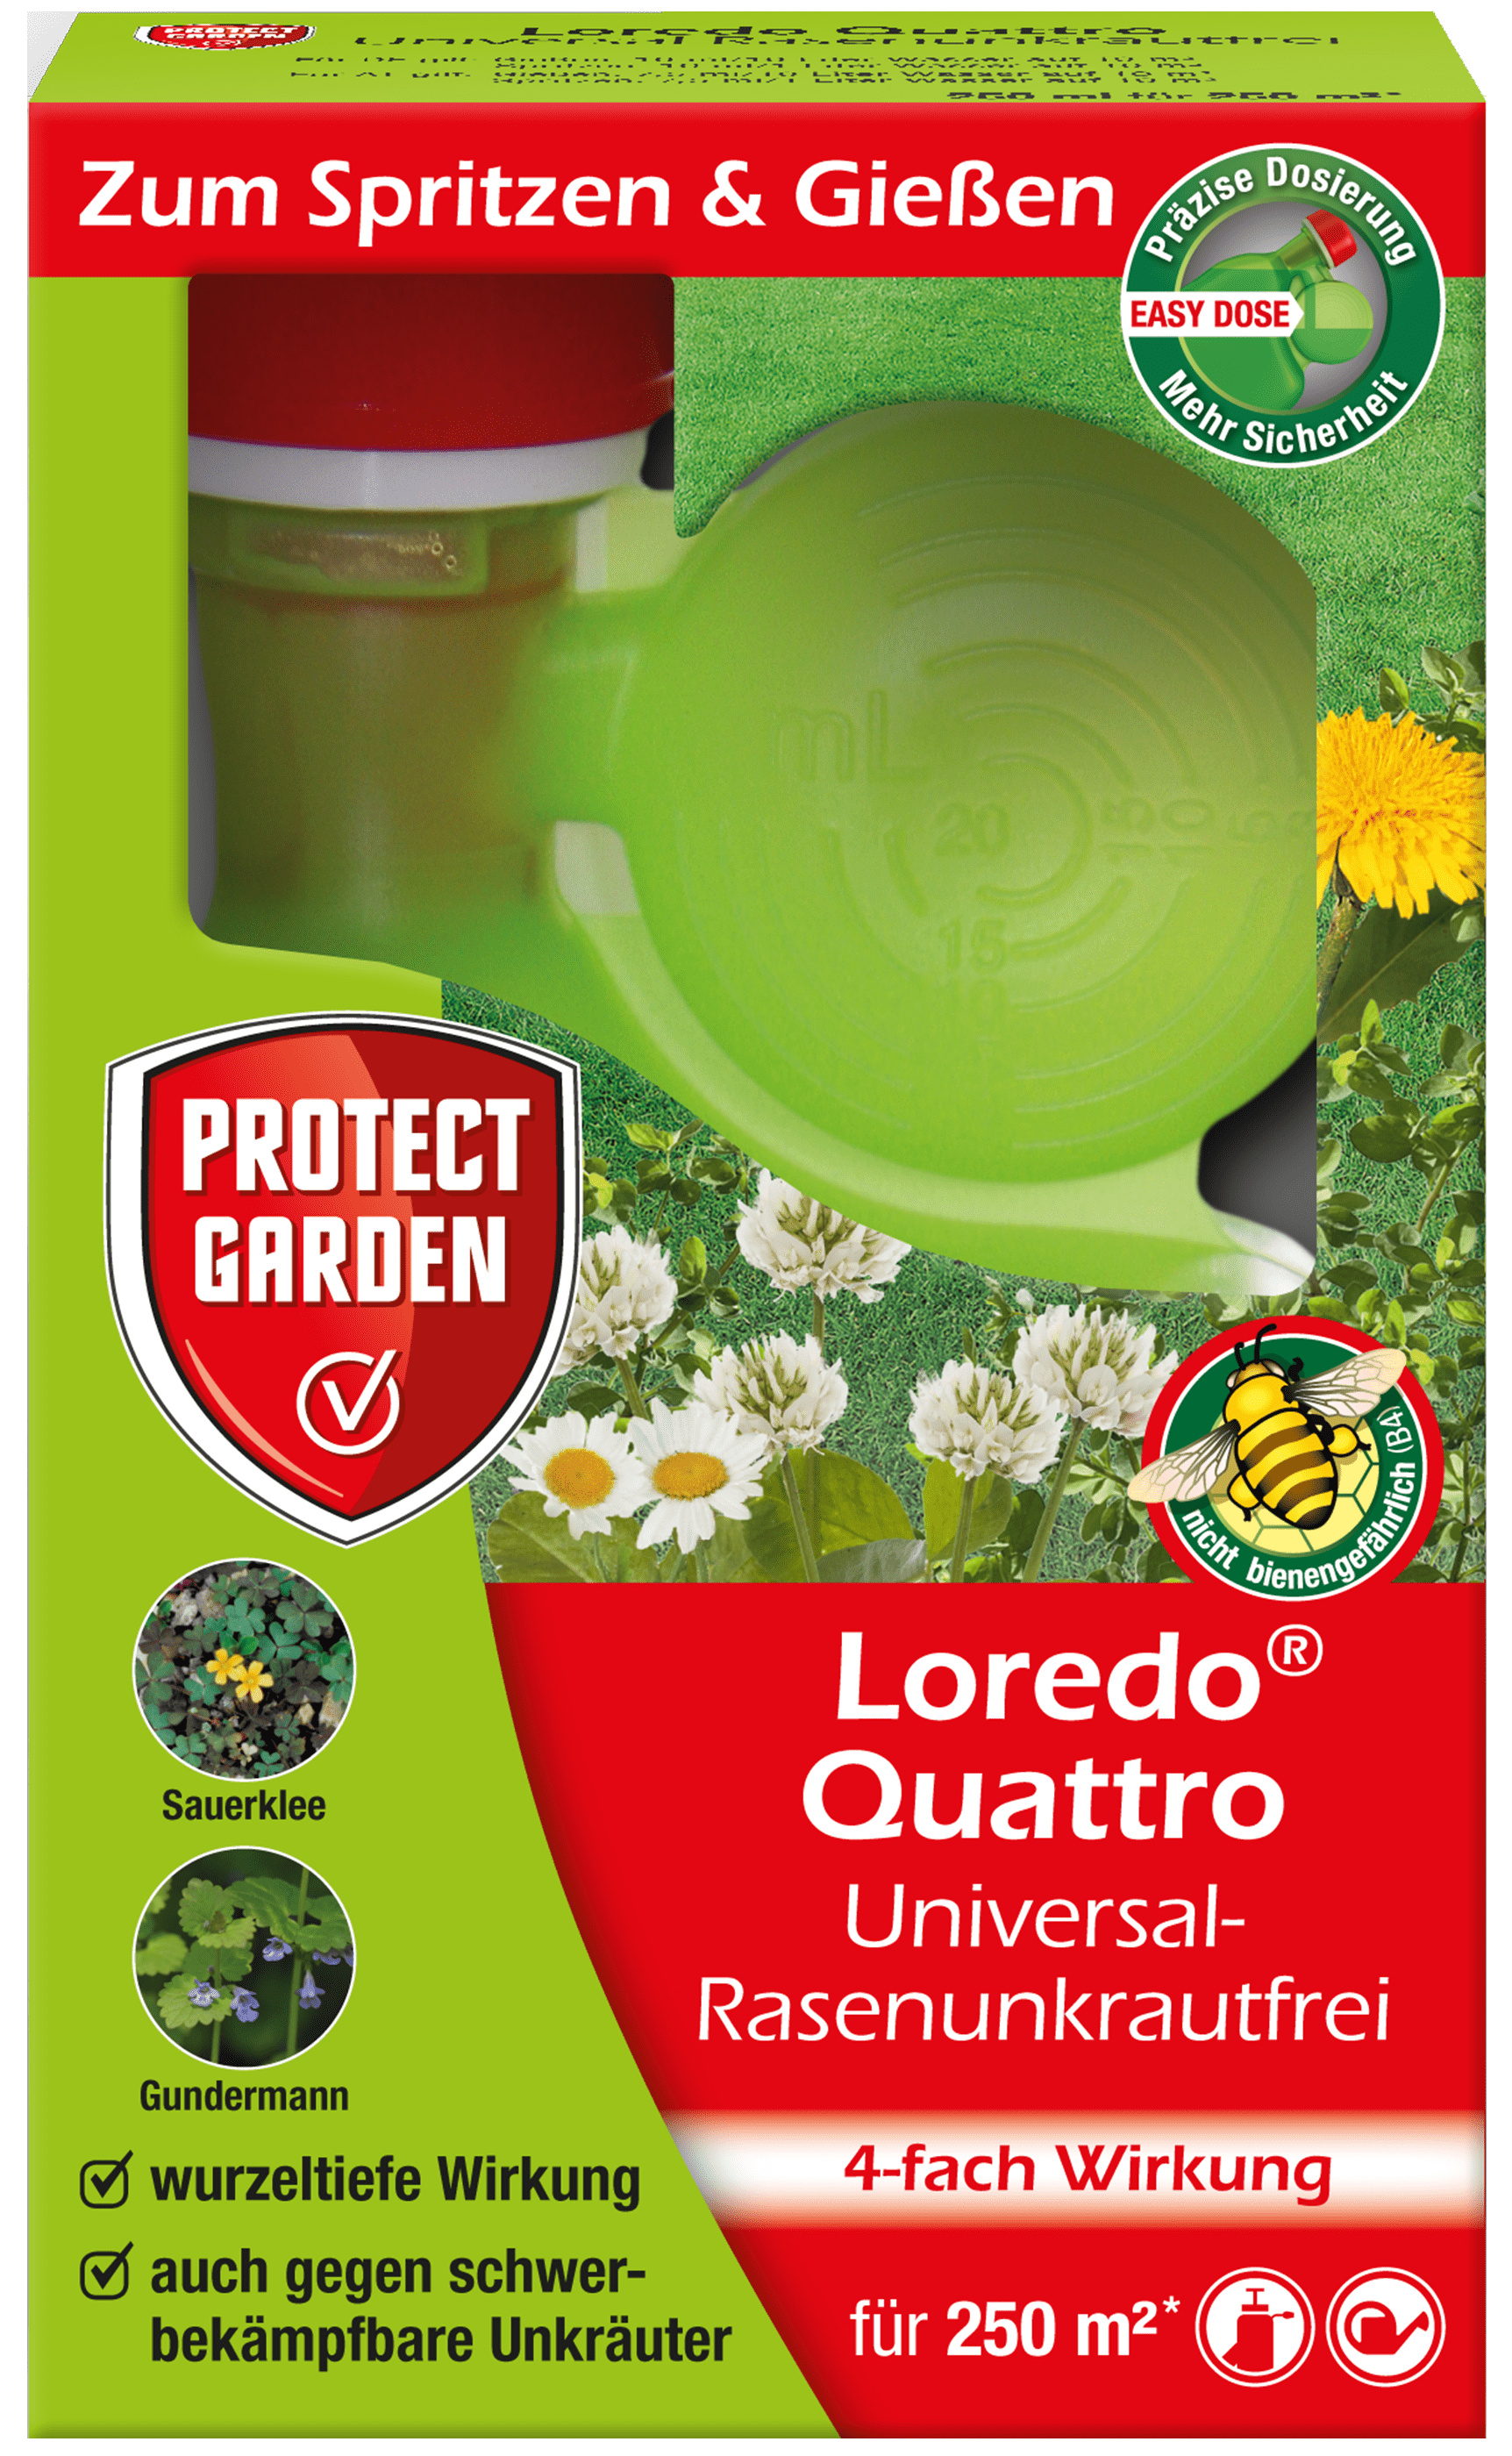 Protect Garden Loredo Quattro Universal-Rasenunkrautfrei für 250 m²